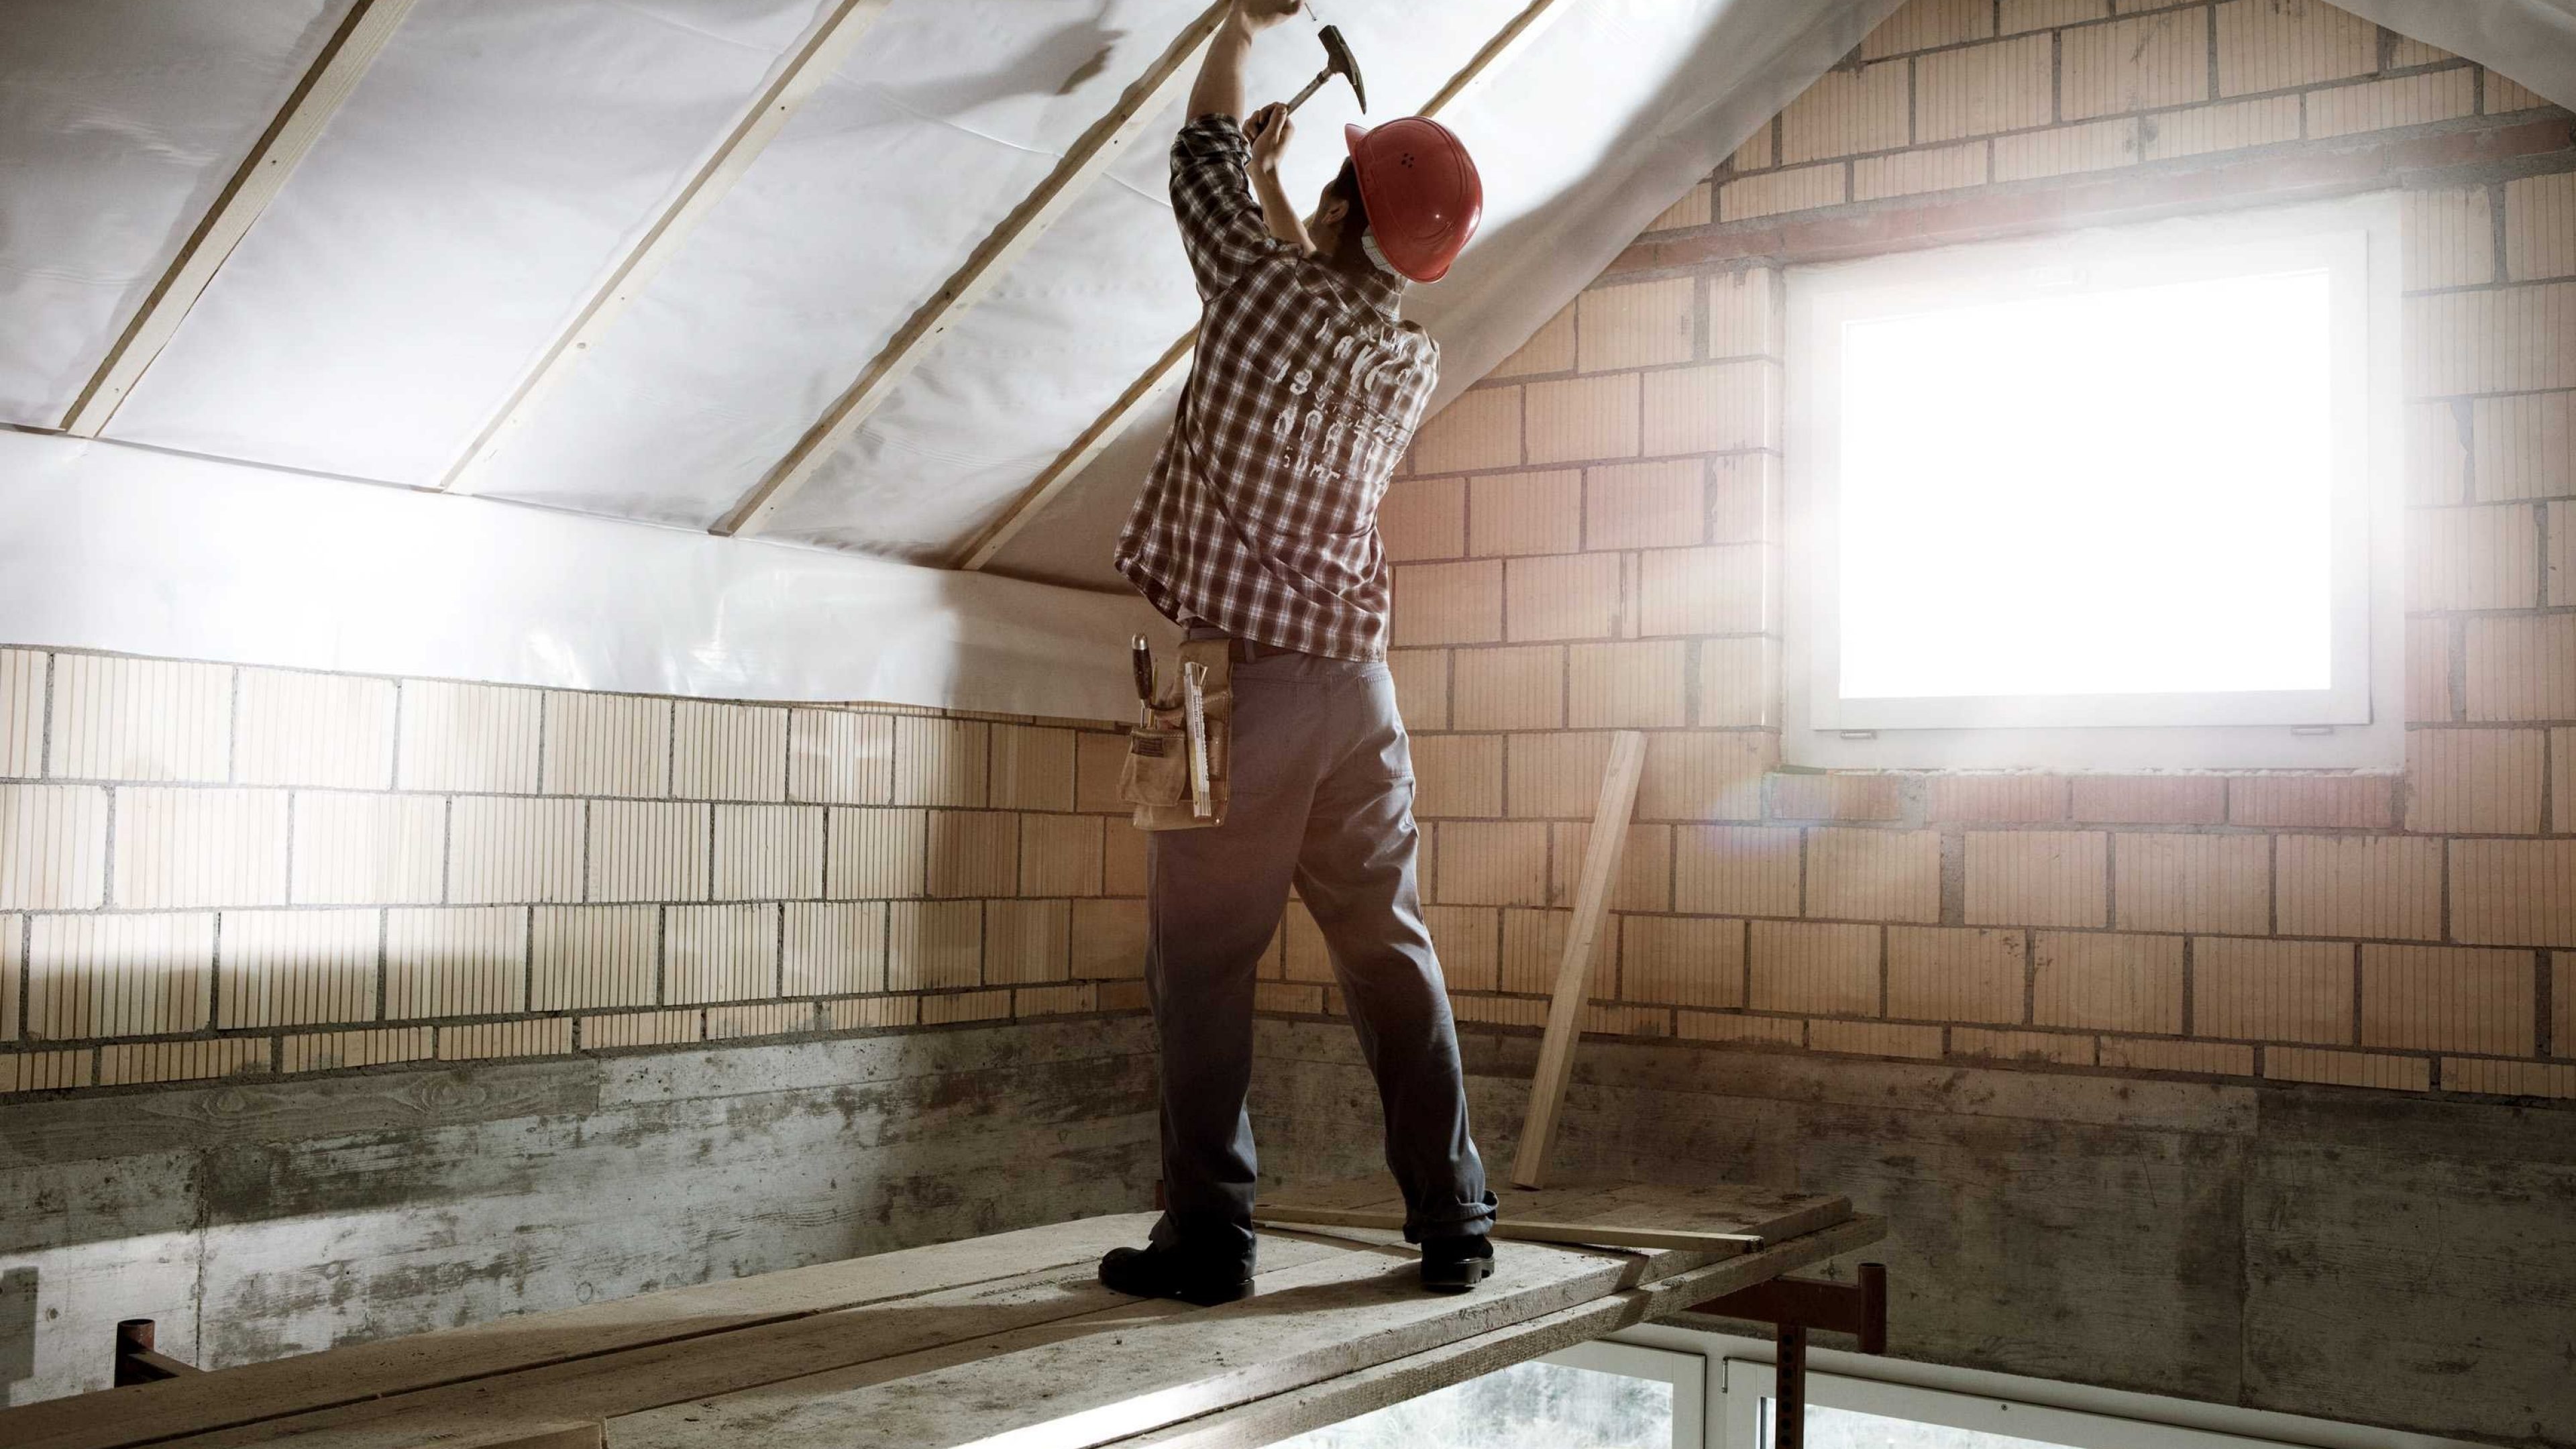 Un uomo sta effettuando dei lavori di ristrutturazione al tetto della sua abitazione.